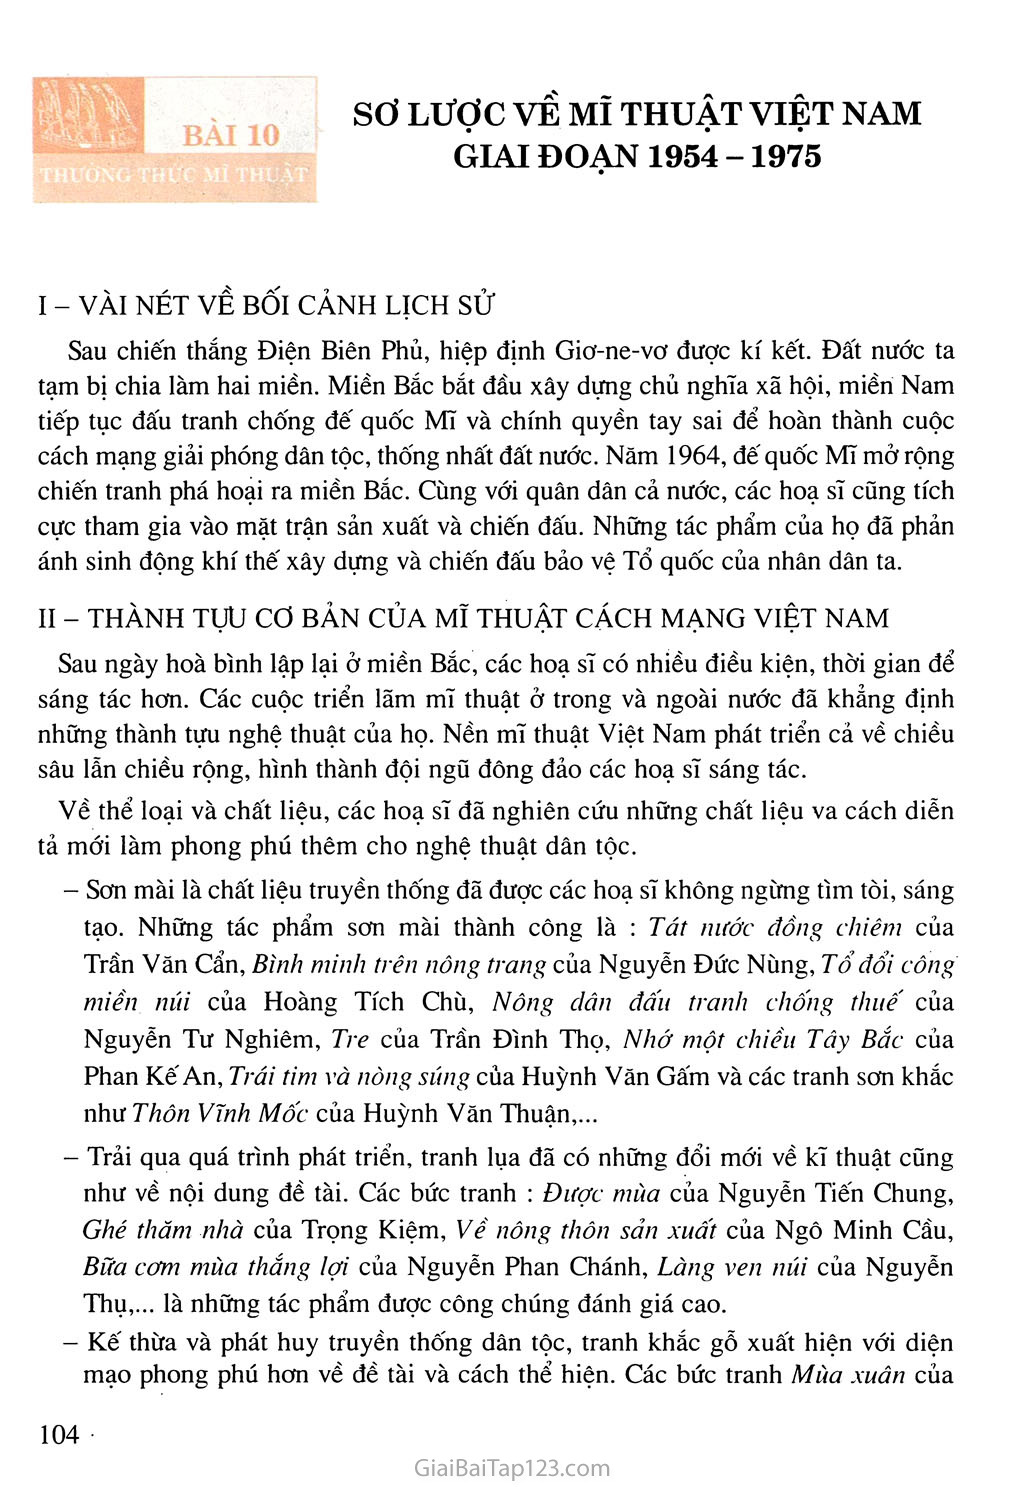 Bài 10. Thường thức mĩ thuật - Sơ lược về mĩ thuật Việt Nam giai đoạn 1954 - 1975 trang 1